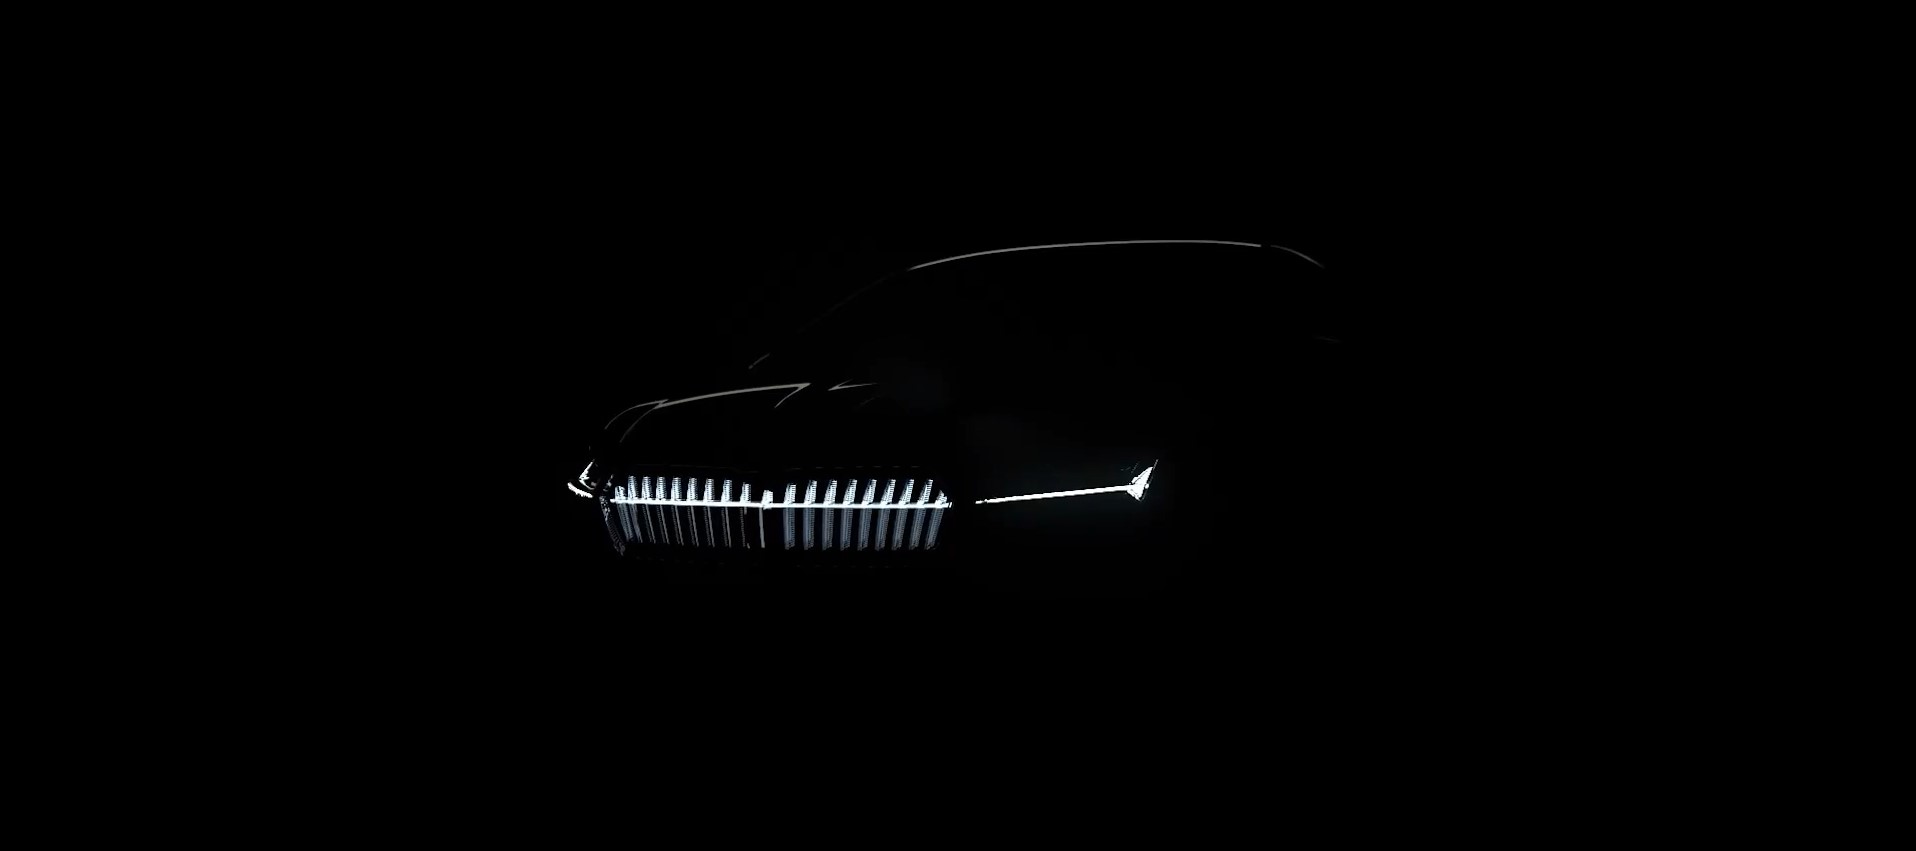 Компания Skoda объявила дату презентации нового электромобиля Skoda Enyaq Coupe iV